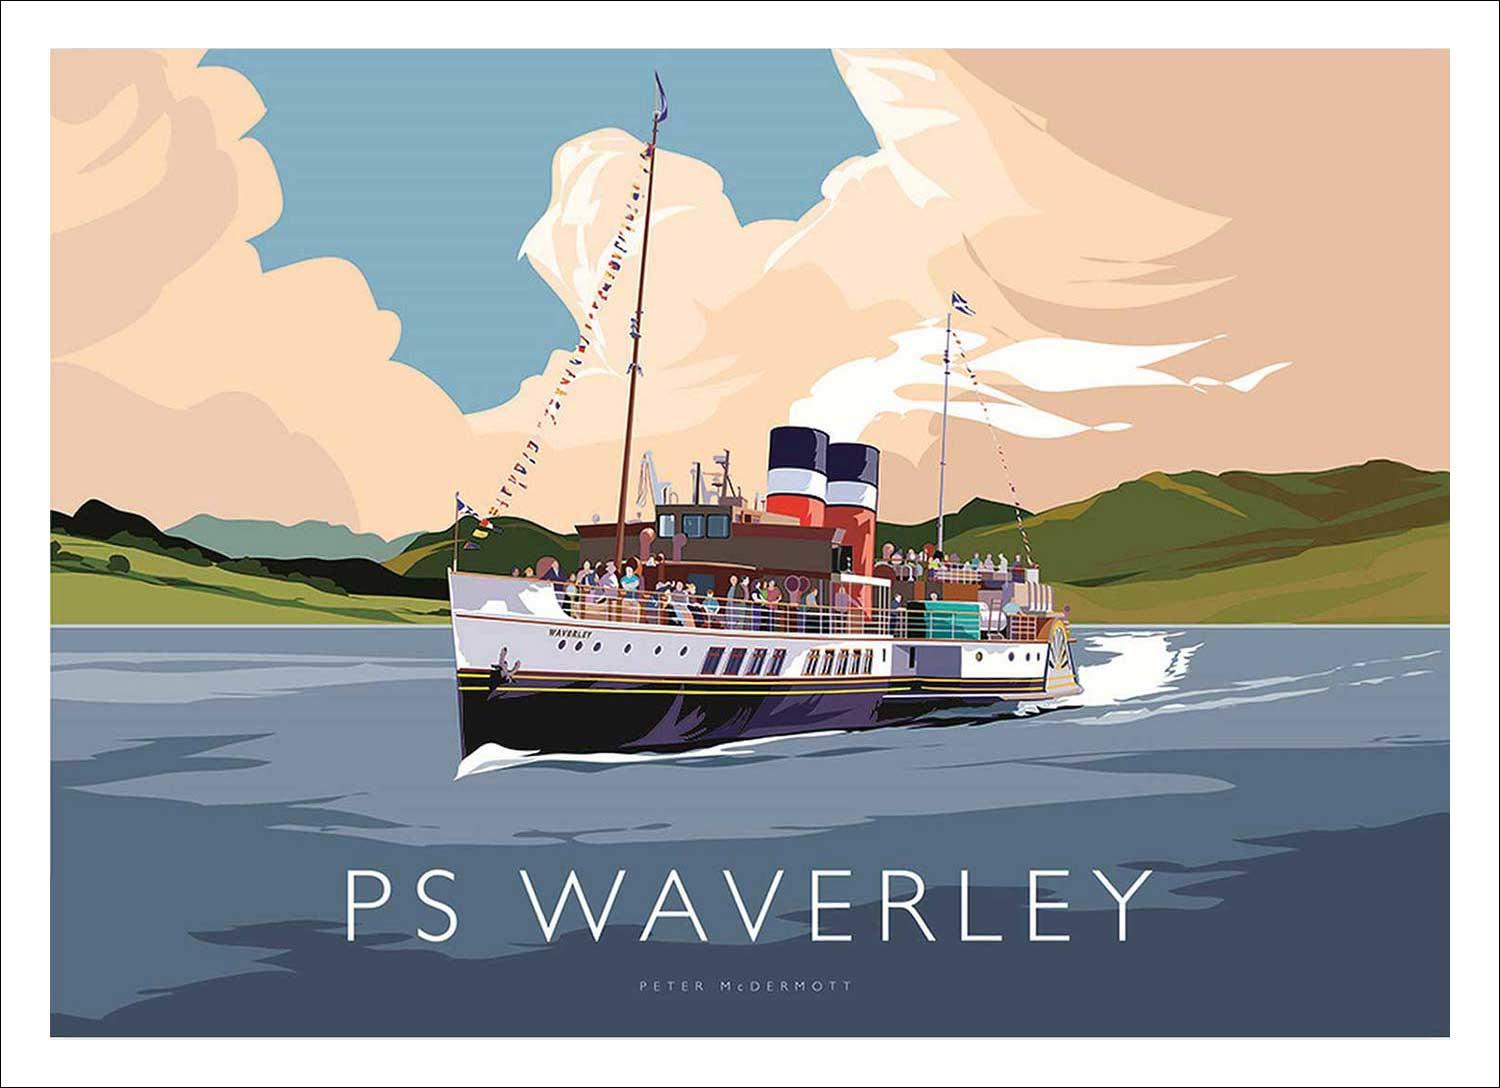 PS Waverley Art Print from an original illustration by artist Peter McDermott